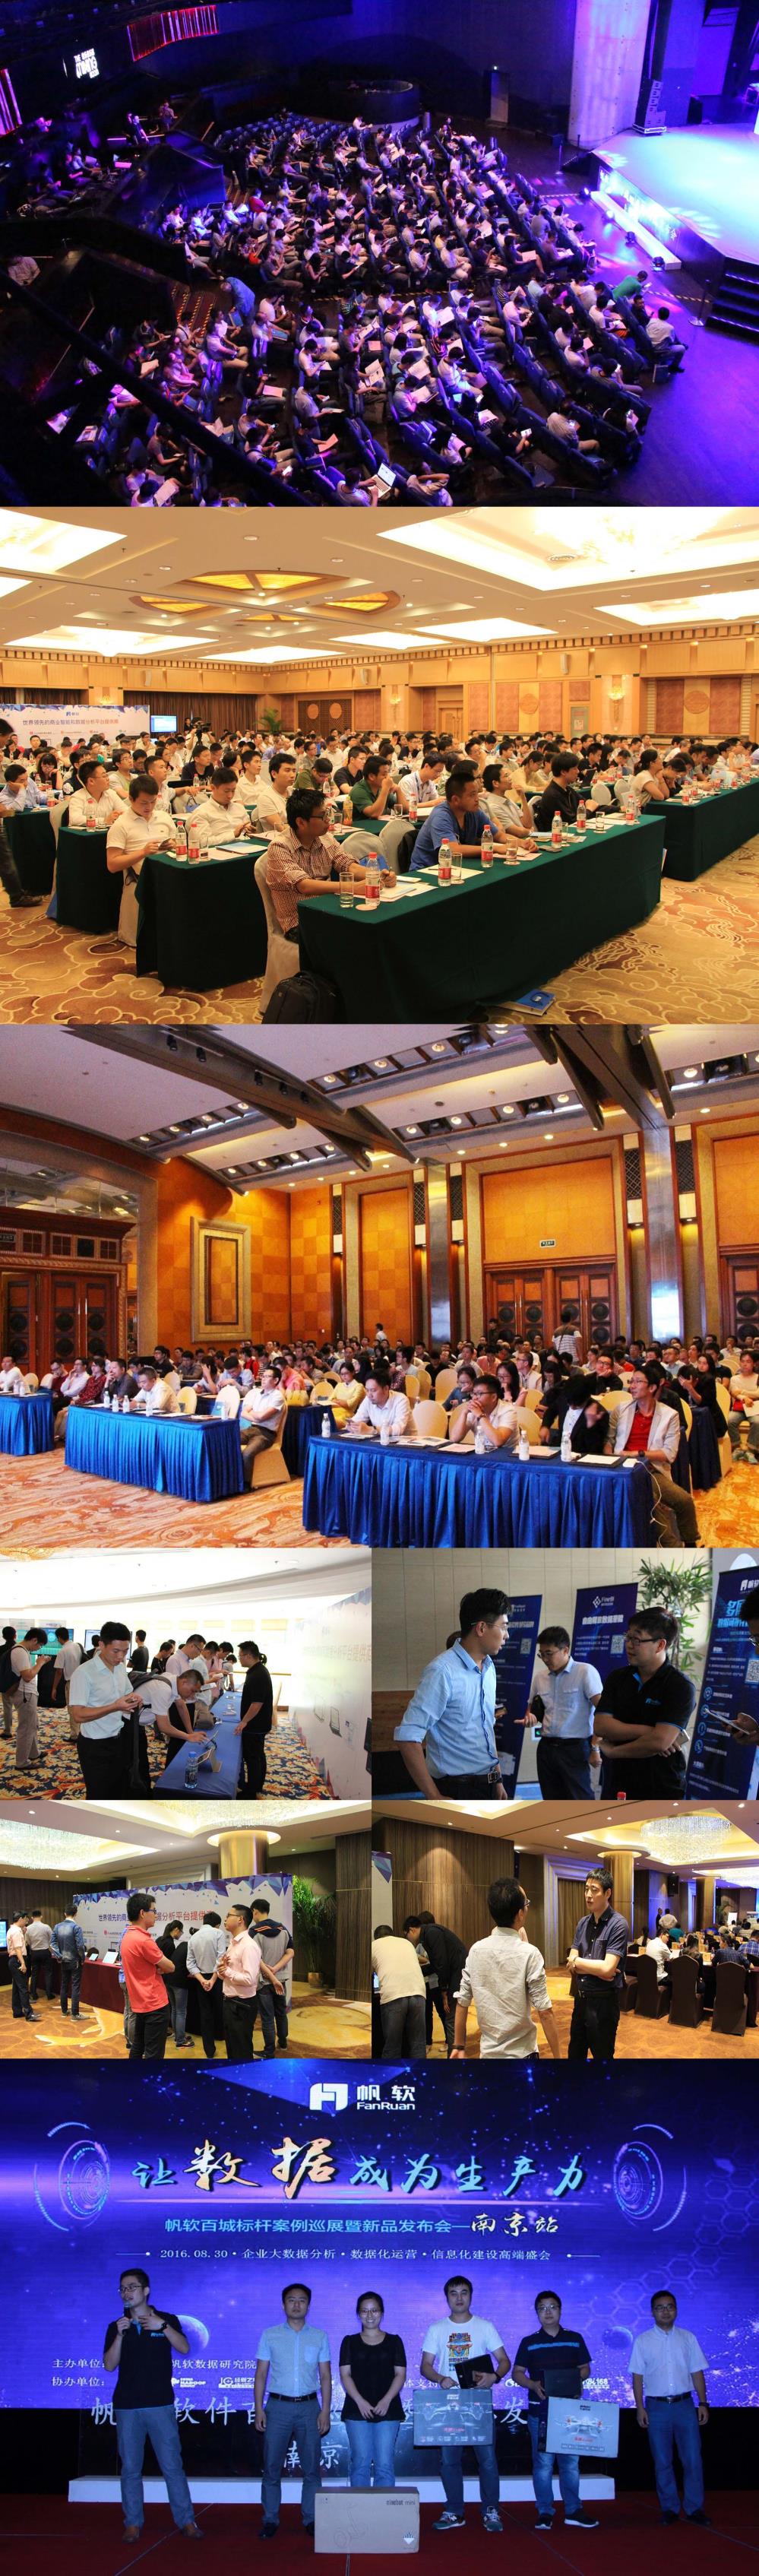 2016年第二届中国医药行业IT价值峰会